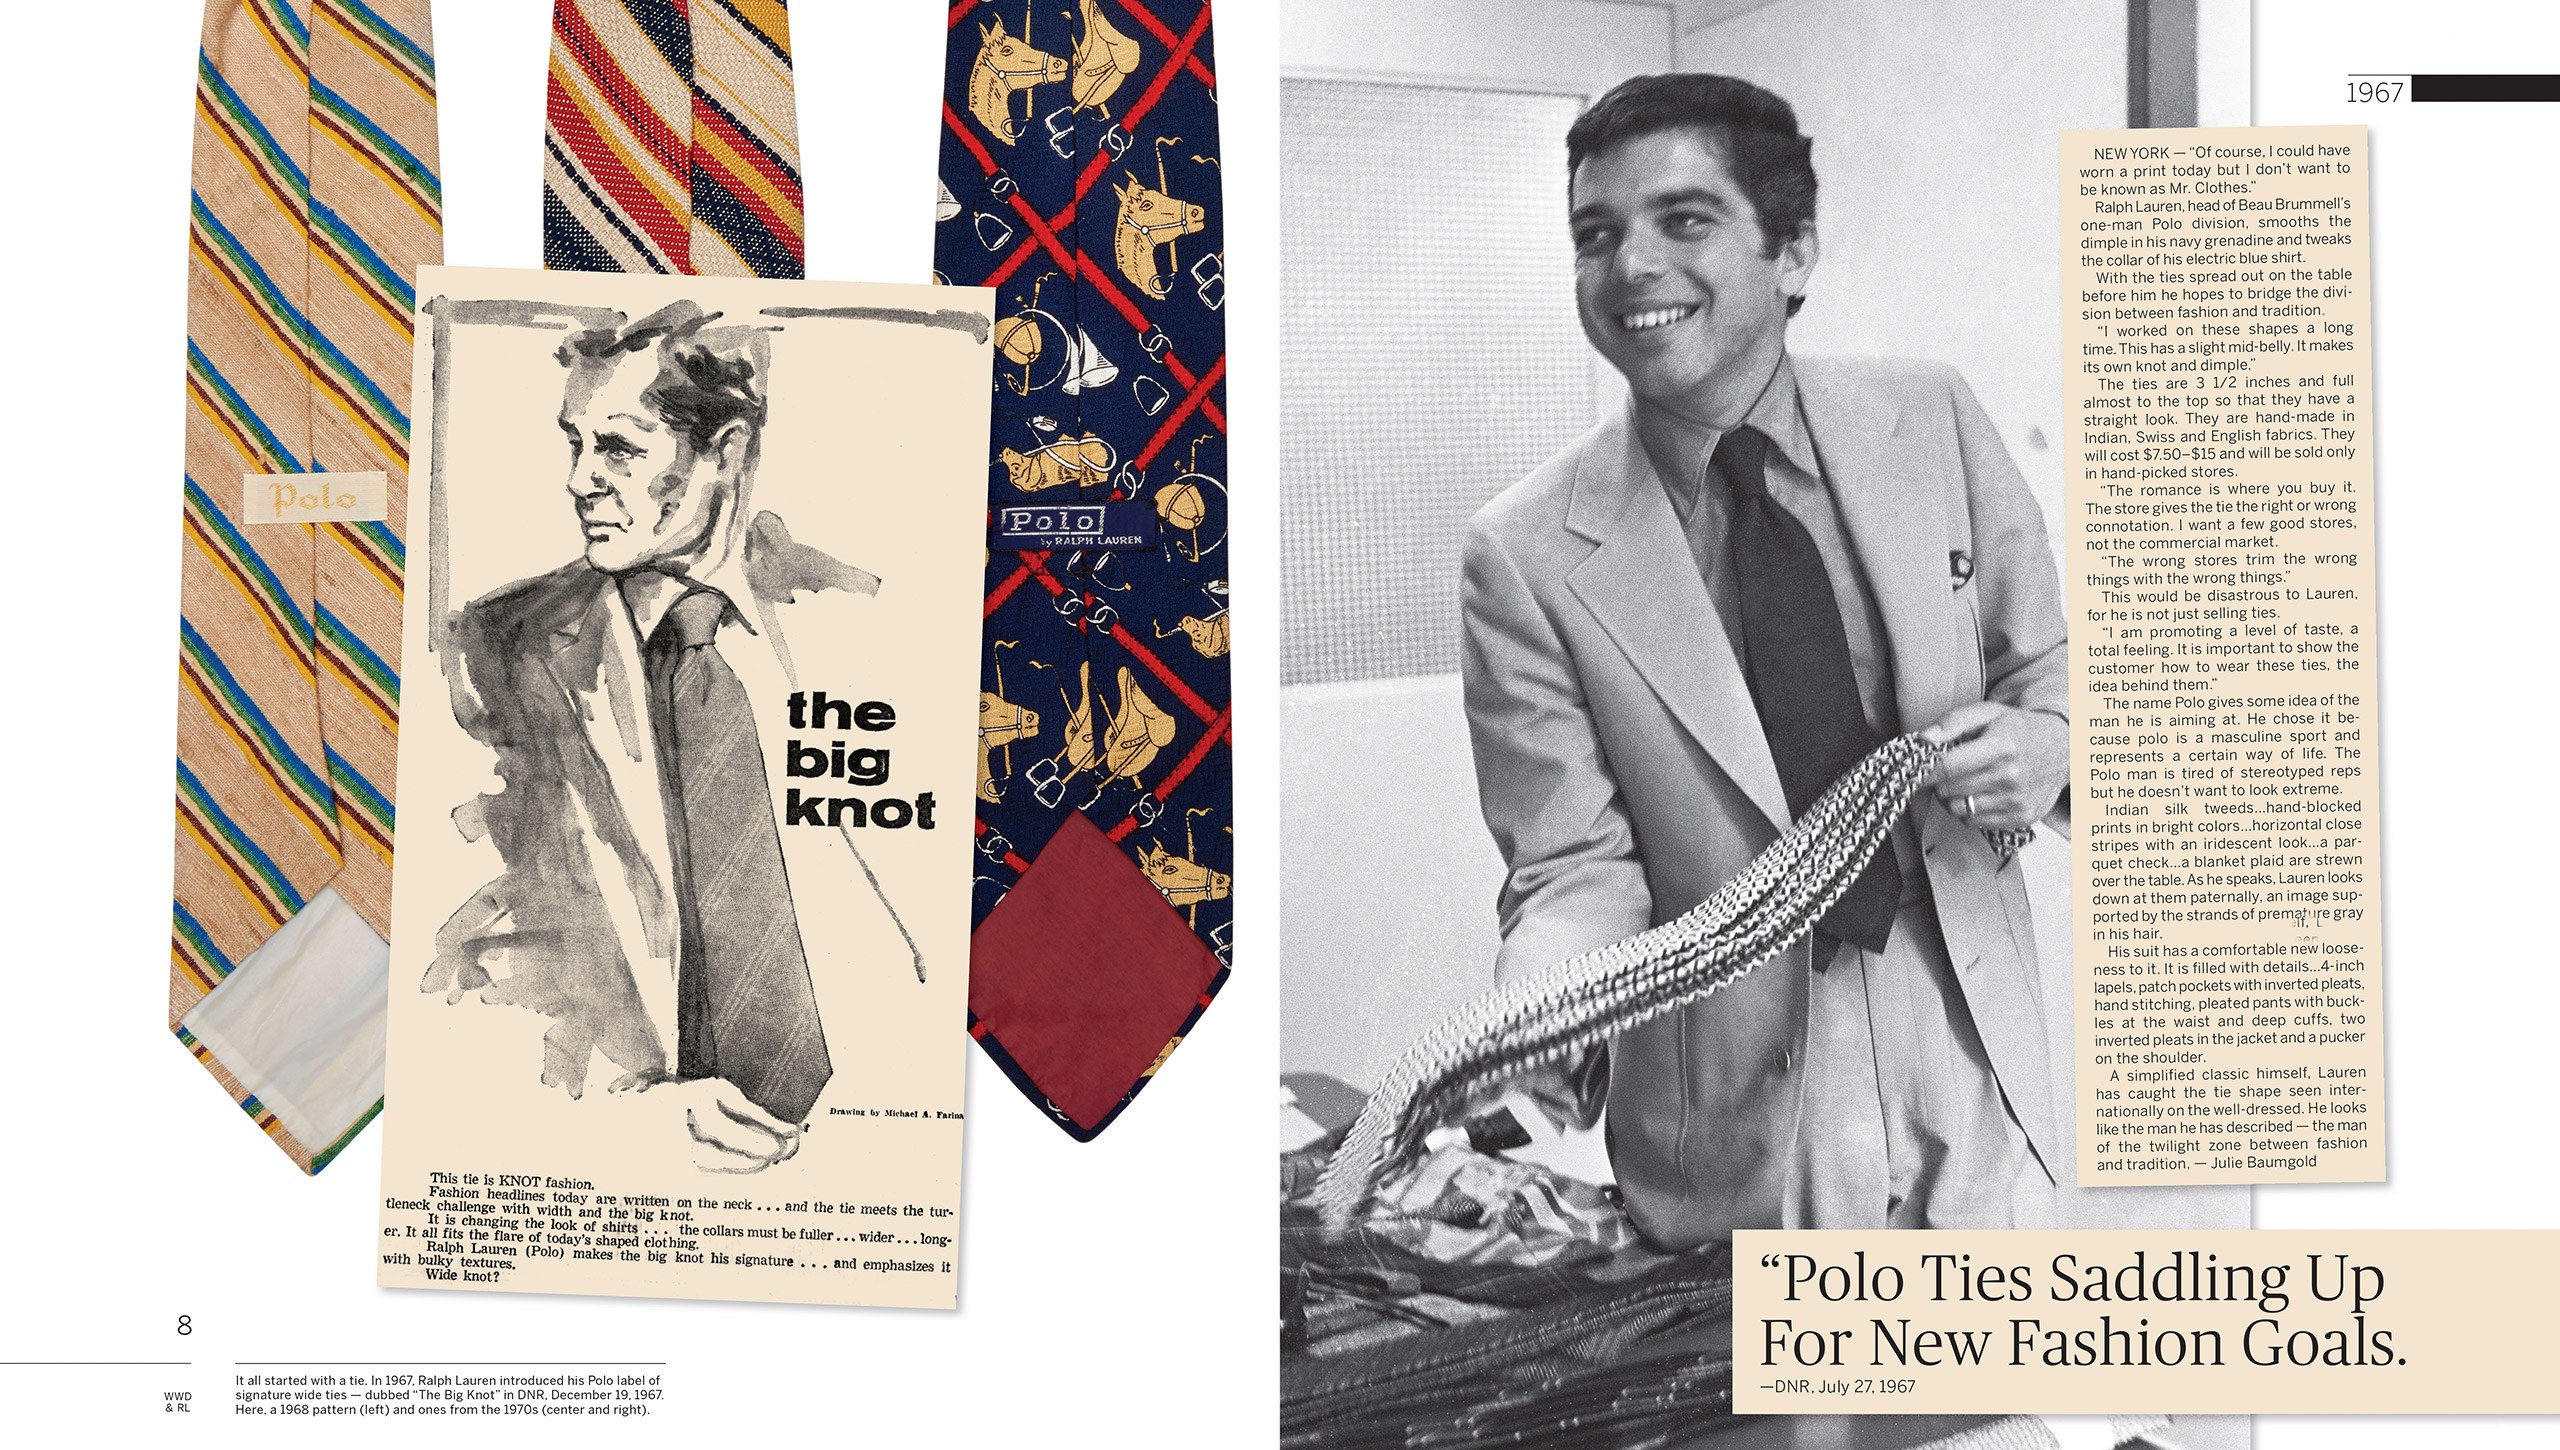 1967: Ralph Lauren d&#xE0; vita al marchio Polo, che nasce come una selezione di cravatte ampie, realizzate a mano in raffinati tessuti indiani, svizzeri e inglesi.&#x201C;Ho lavorato a lungo a questi modelli&#x201D;, racconta Ralph Lauren a DNR.&#x201C;Questo cade all&#x2019;incirca a met&#xE0; addome.Ha un nodo e una fossetta del tutto unici&#x201D;. Sebbene Polo sia ancora una divisione unipersonale della societ&#xE0; Beau Brummell, Ralph Lauren ha gi&#xE0; le idee molto chiare sul vero potenziale della sua linea. &#x201C;Quello che cerco di promuovere &#xE8; un certo livello di gusto&#x201D;, spiega, &#x201C;un&#x2019;esperienza totale&#x201D;.